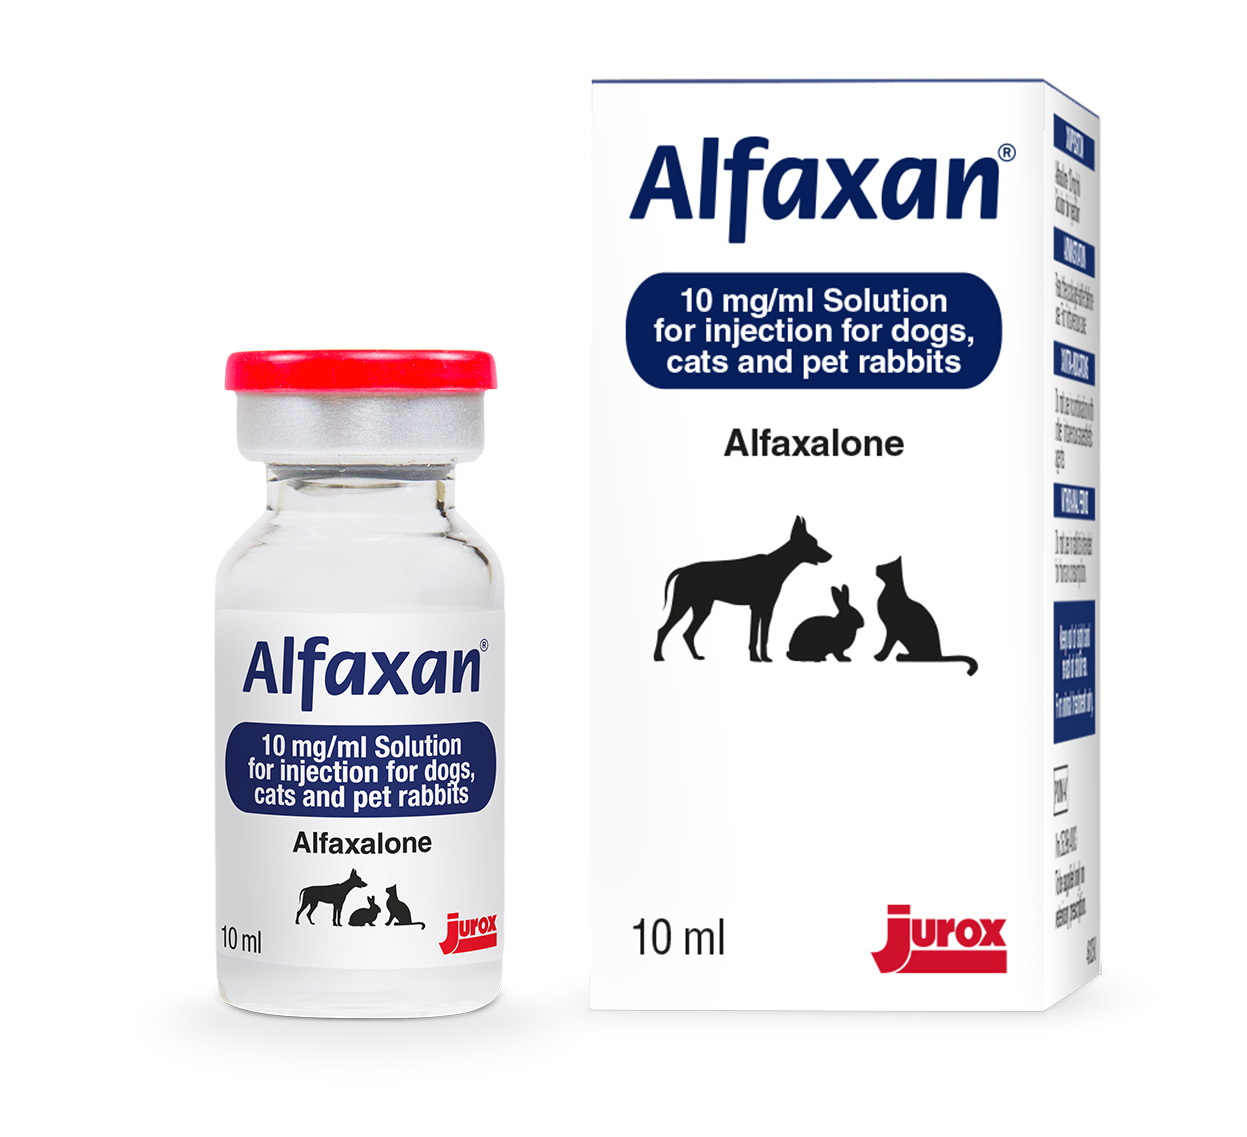 Alfaxan vial and carton